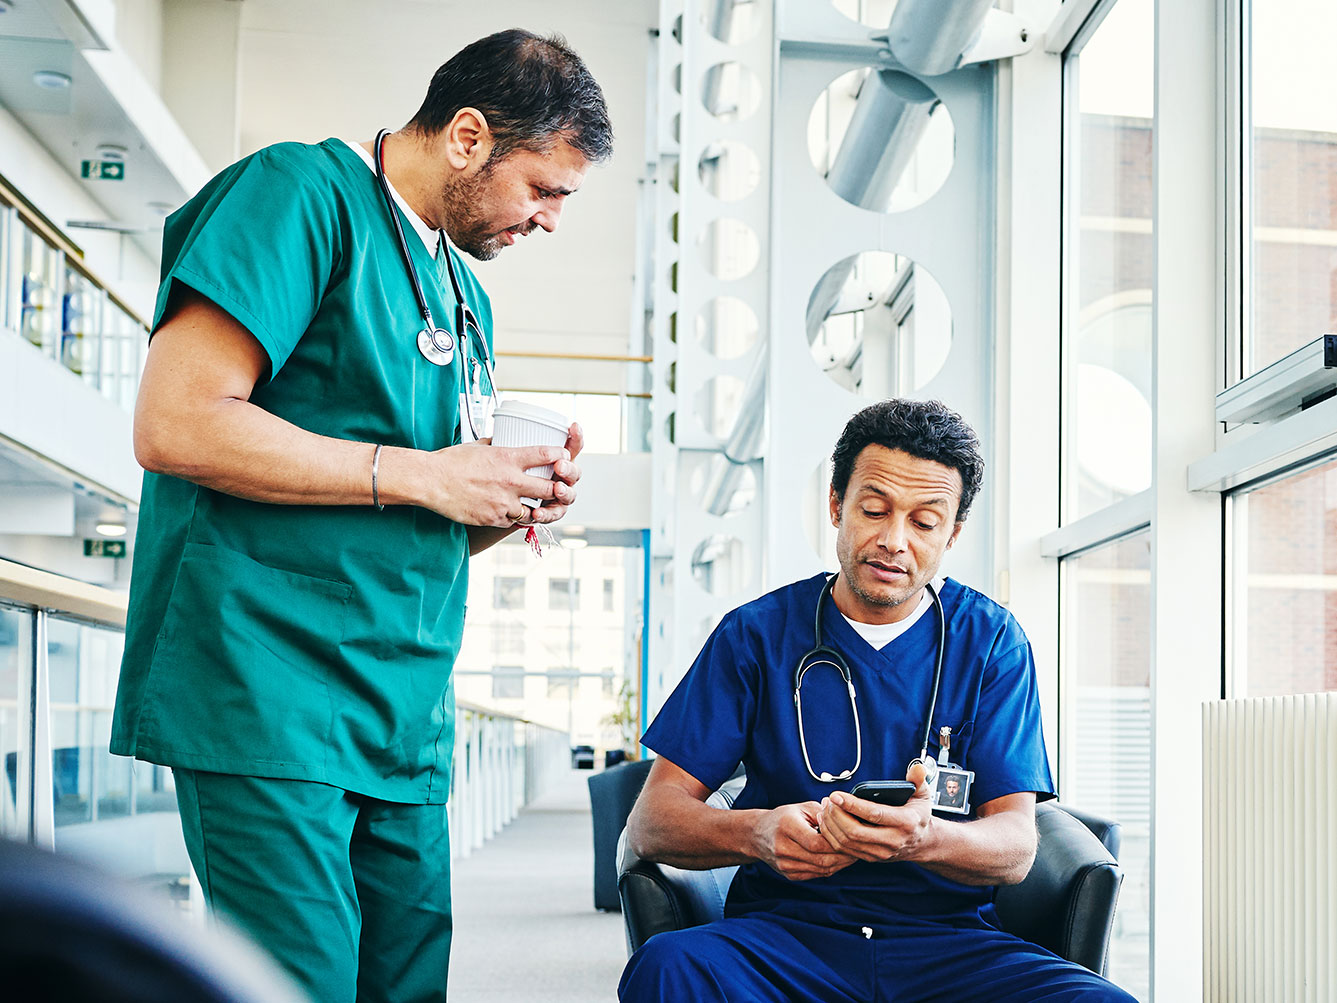 Zwei medizinische Fachkräfte befinden sich in einer medizinischen Einrichtung. Der eine, stehend, trägt einen grünen Kittel und hält eine Kaffeetasse. Der andere, sitzend, trägt einen blauen Kittel und schaut auf ein Smartphone.